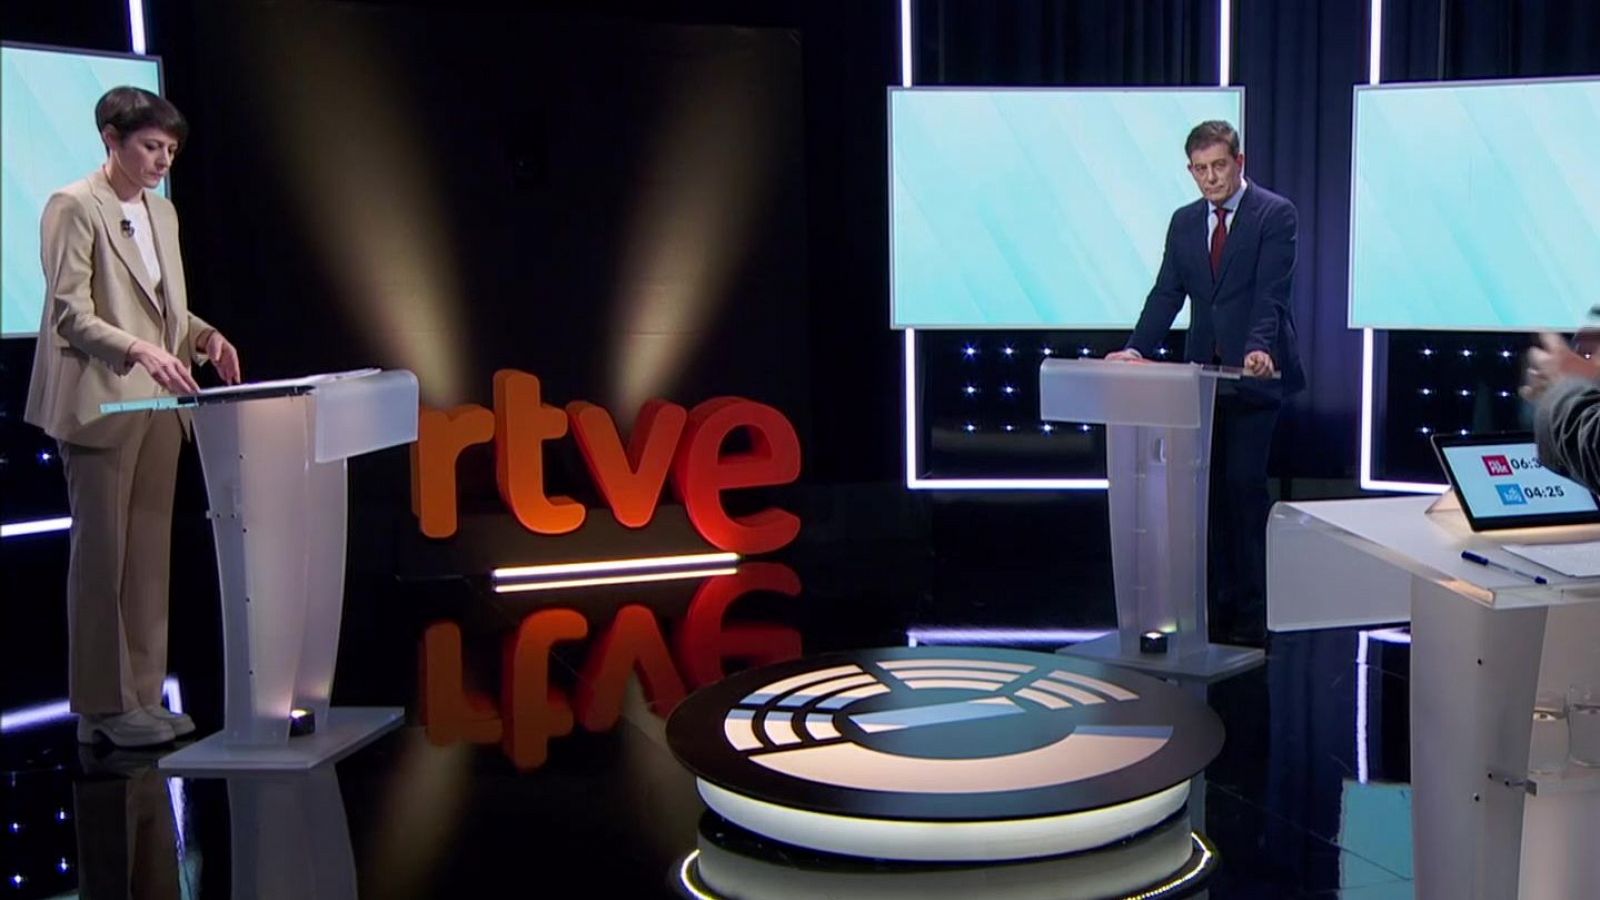 Besteiro inicia el debate en RTVE criticando a Rueda por no acudir